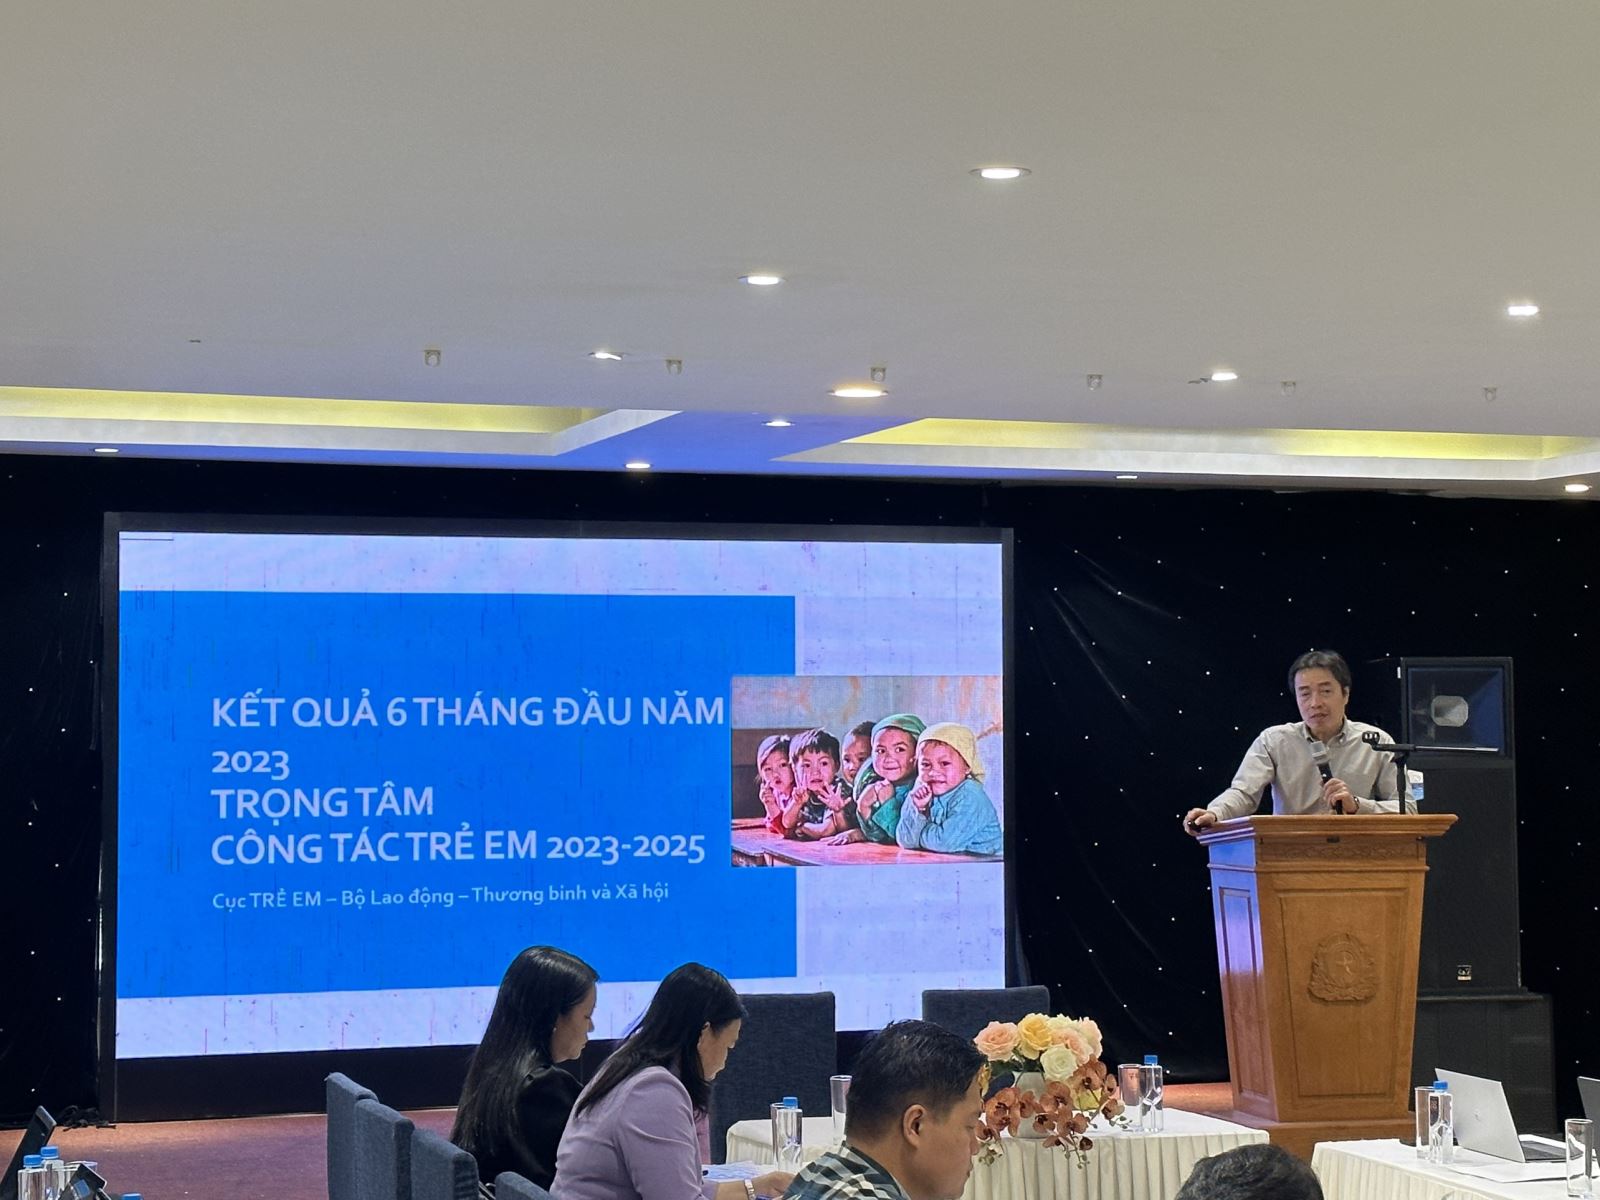 Đồng chí Đặng Hoa Nam - Cục trưởng Cục Trẻ em phát biểu khai mạc và định hướng nội dung thảo luận tại Hội nghị